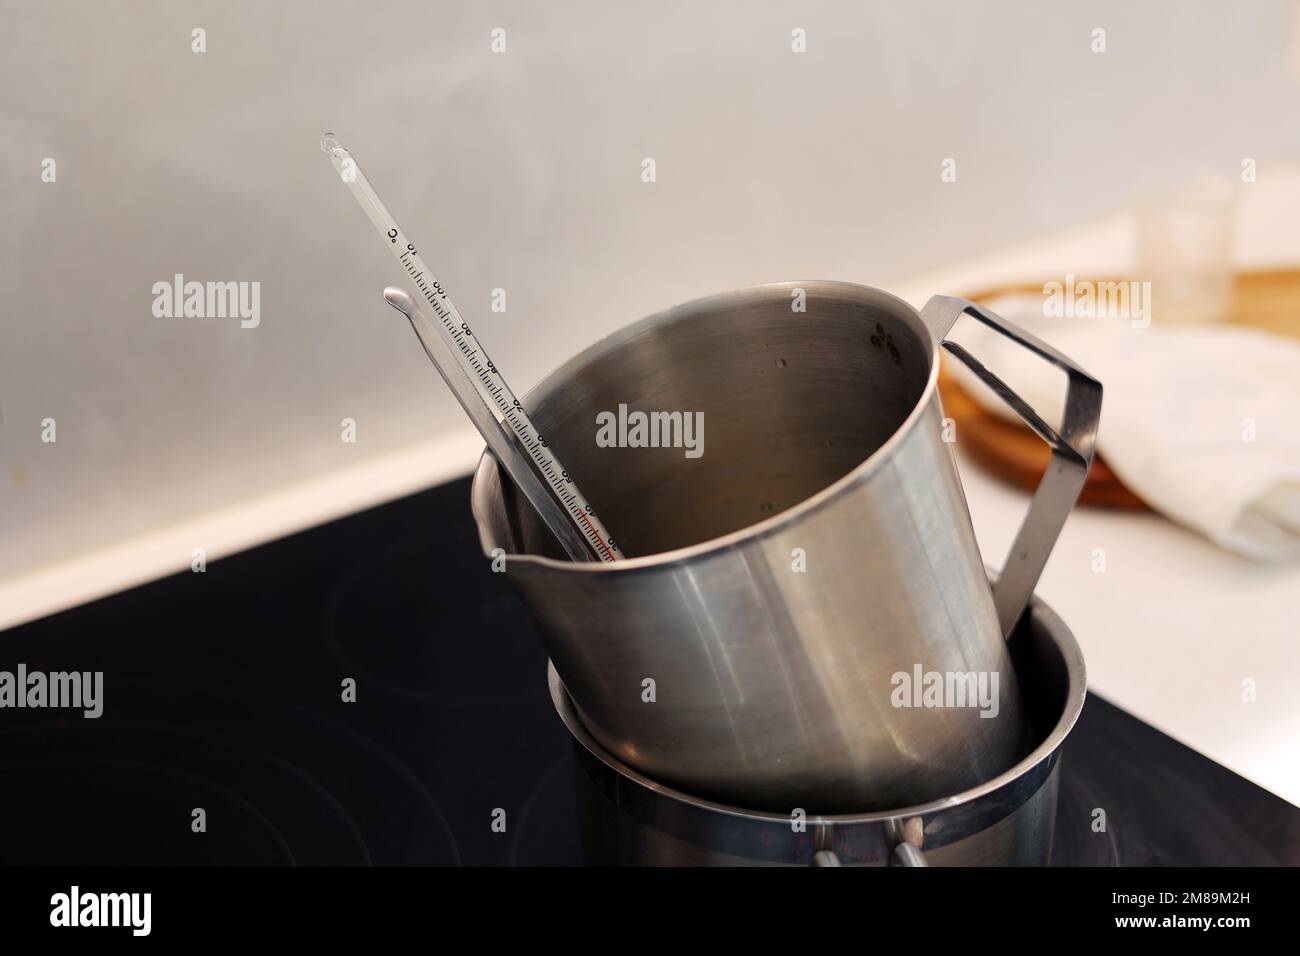 Erhitzen Sie die Messkanne mit Wasser und Jojobaöl in kochendem Wasser, und zeichnen Sie die Temperatur mit einem Thermometer auf Stockfoto